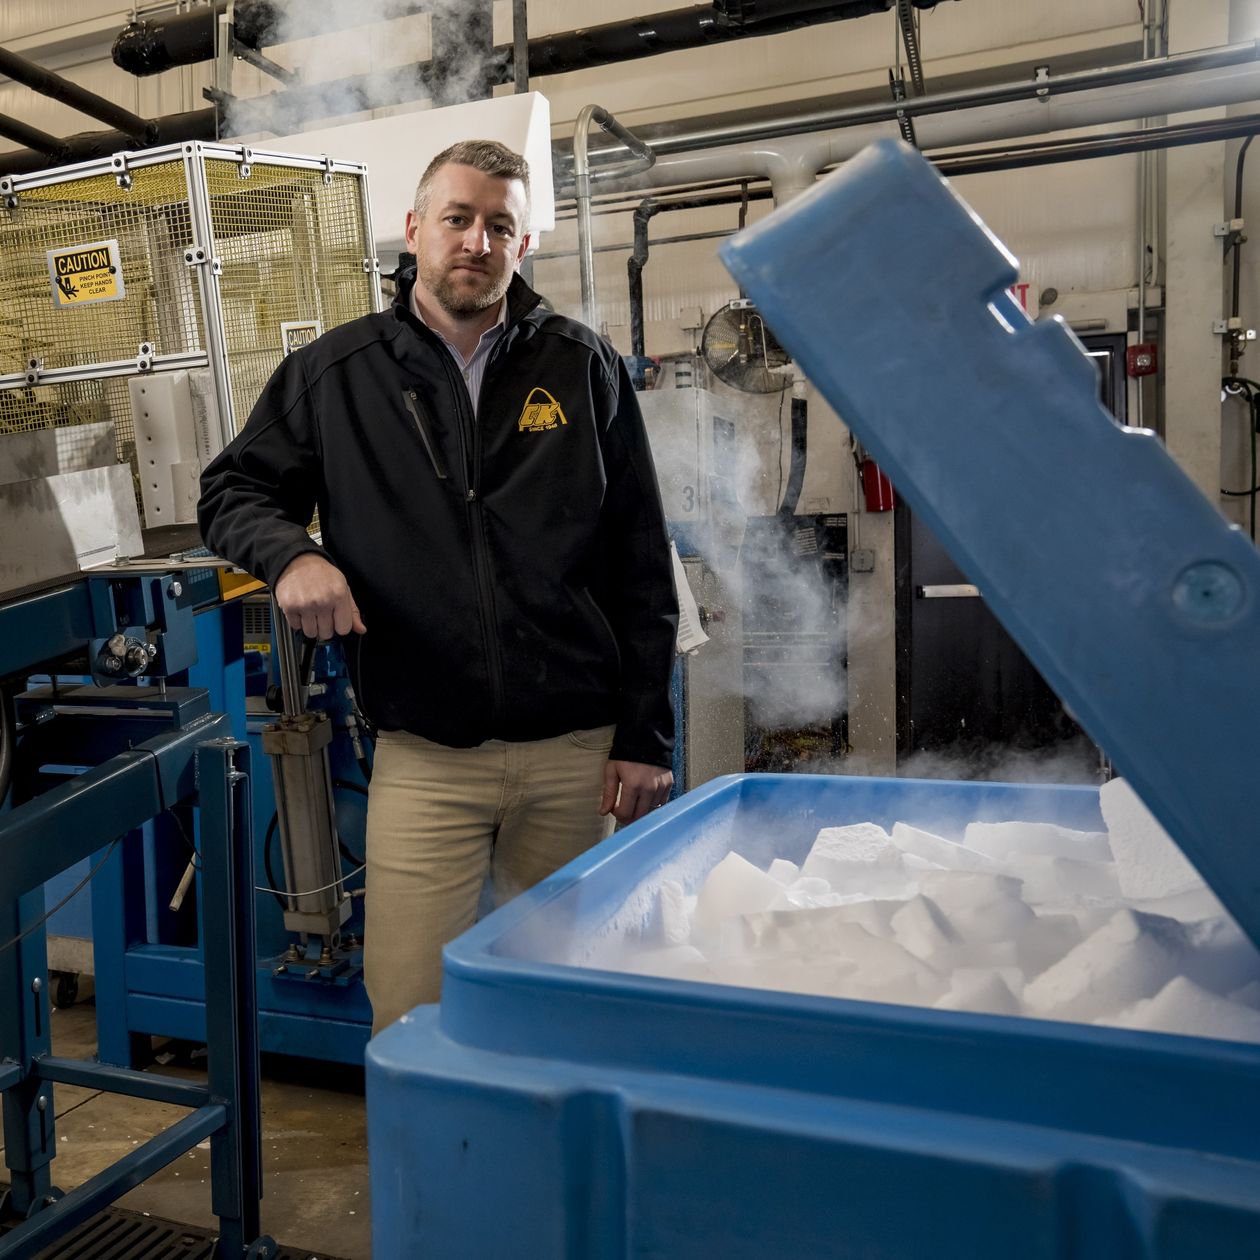 Brad Dunn, віцепрезидент компанії Cee Kay Supply в Сент-Луїсі, яка виготовляє сухий лід